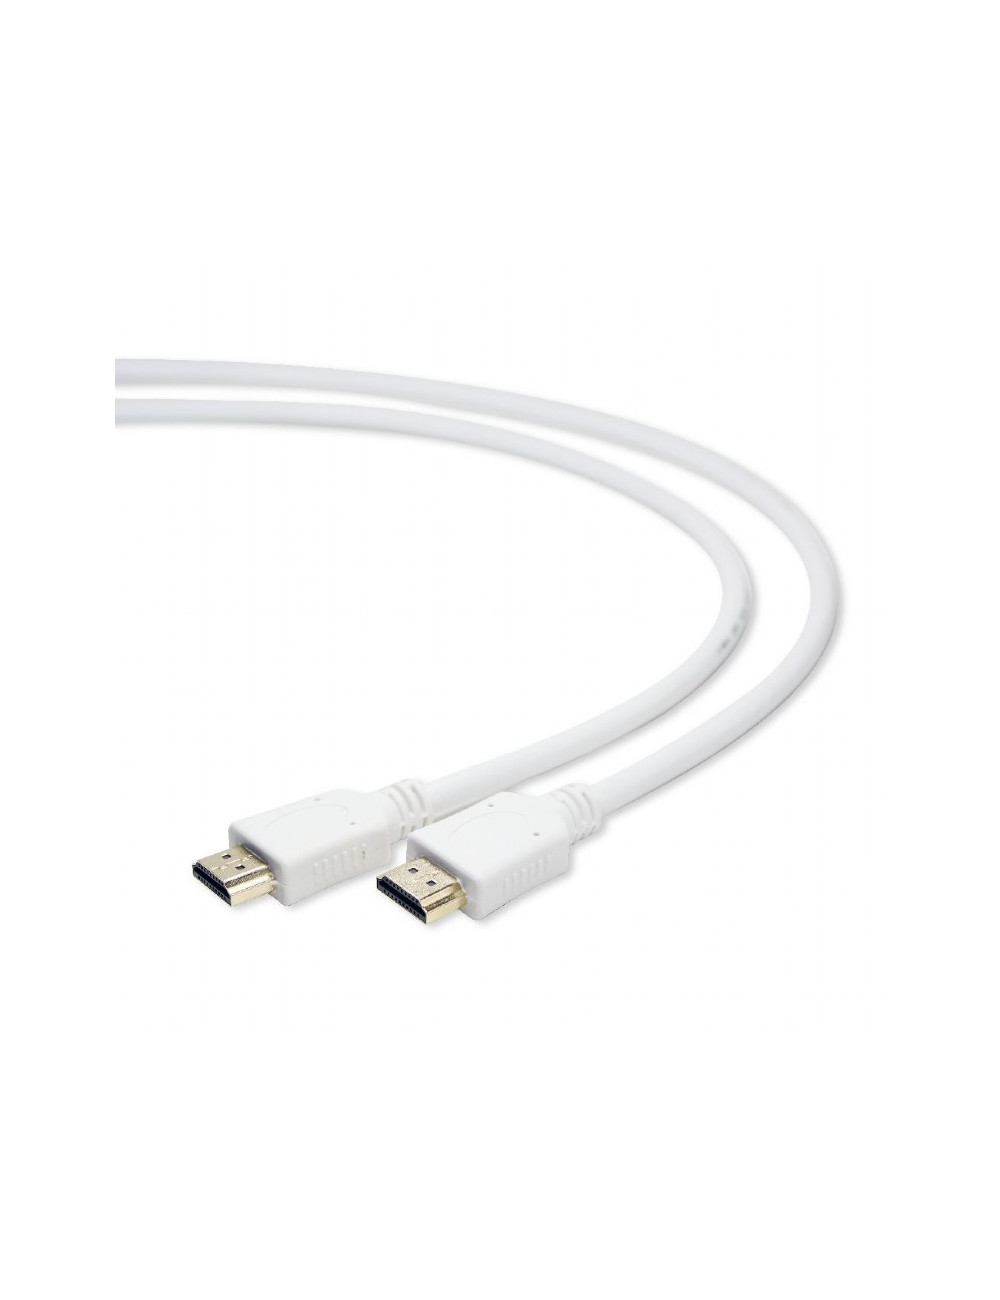 Cablexpert HDMI male-male cable CC-HDMI4-W-6 1.8 m